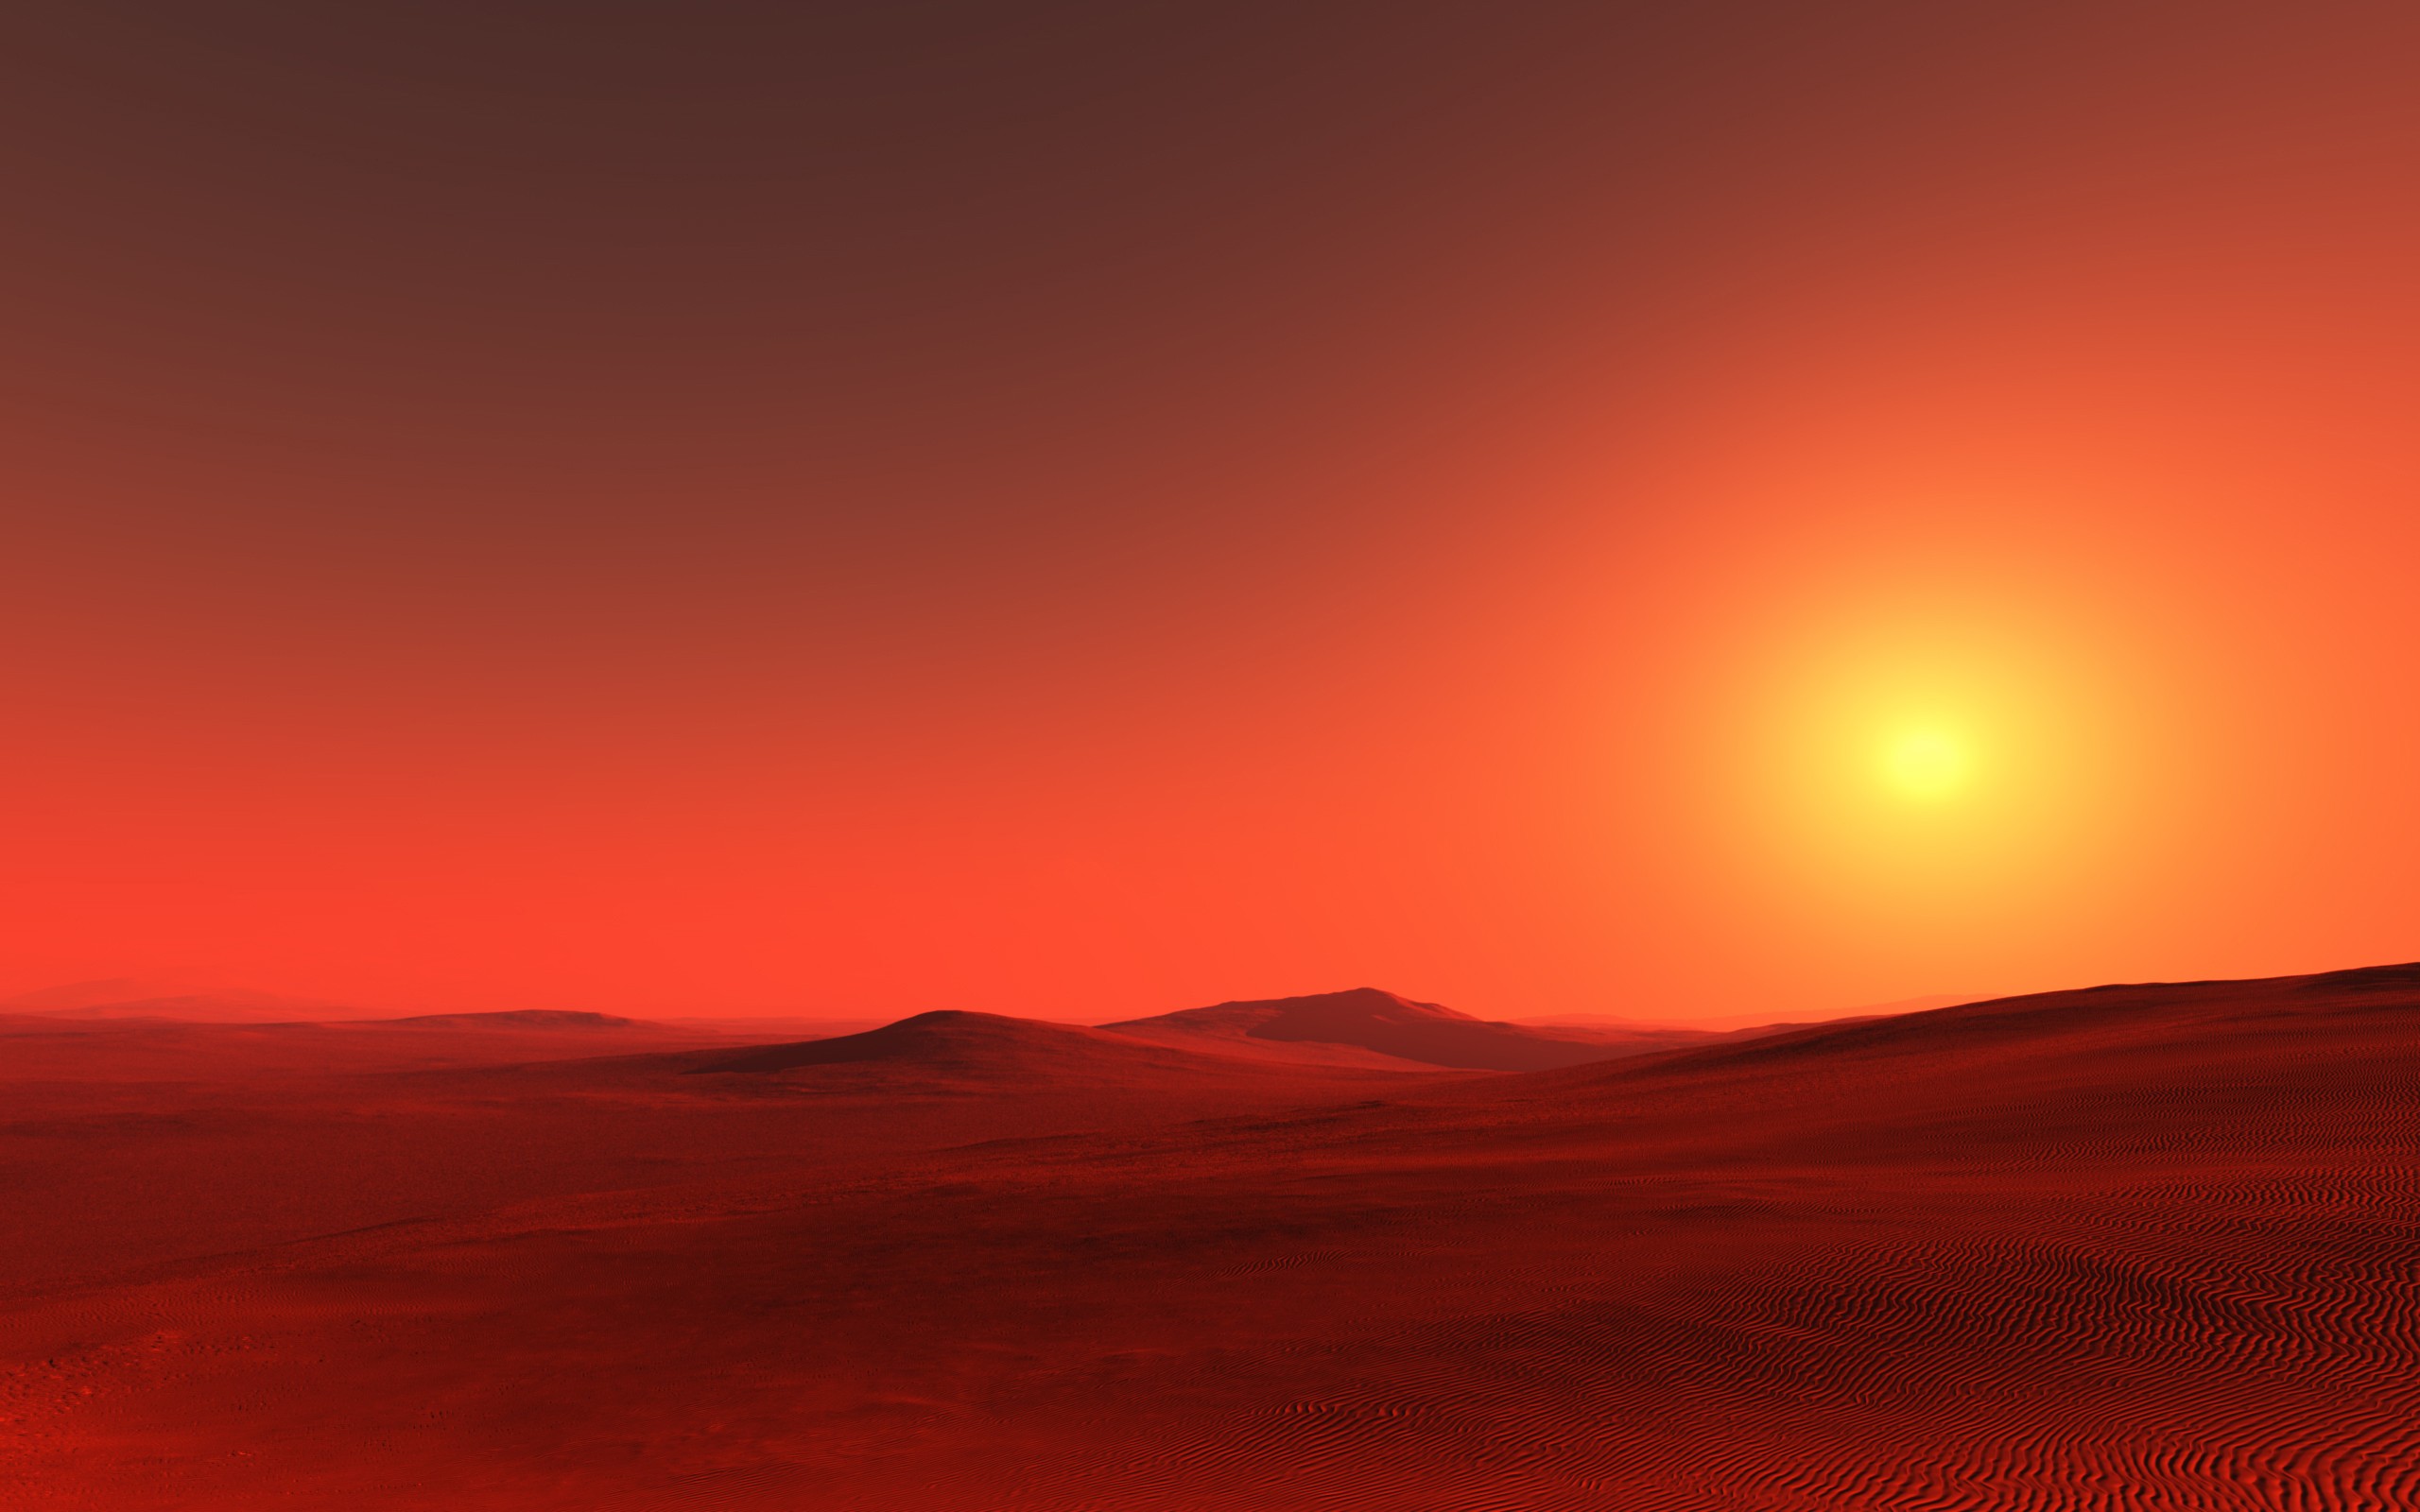 General 2560x1600 desert digital art red stars sky sunlight dunes landscape nature